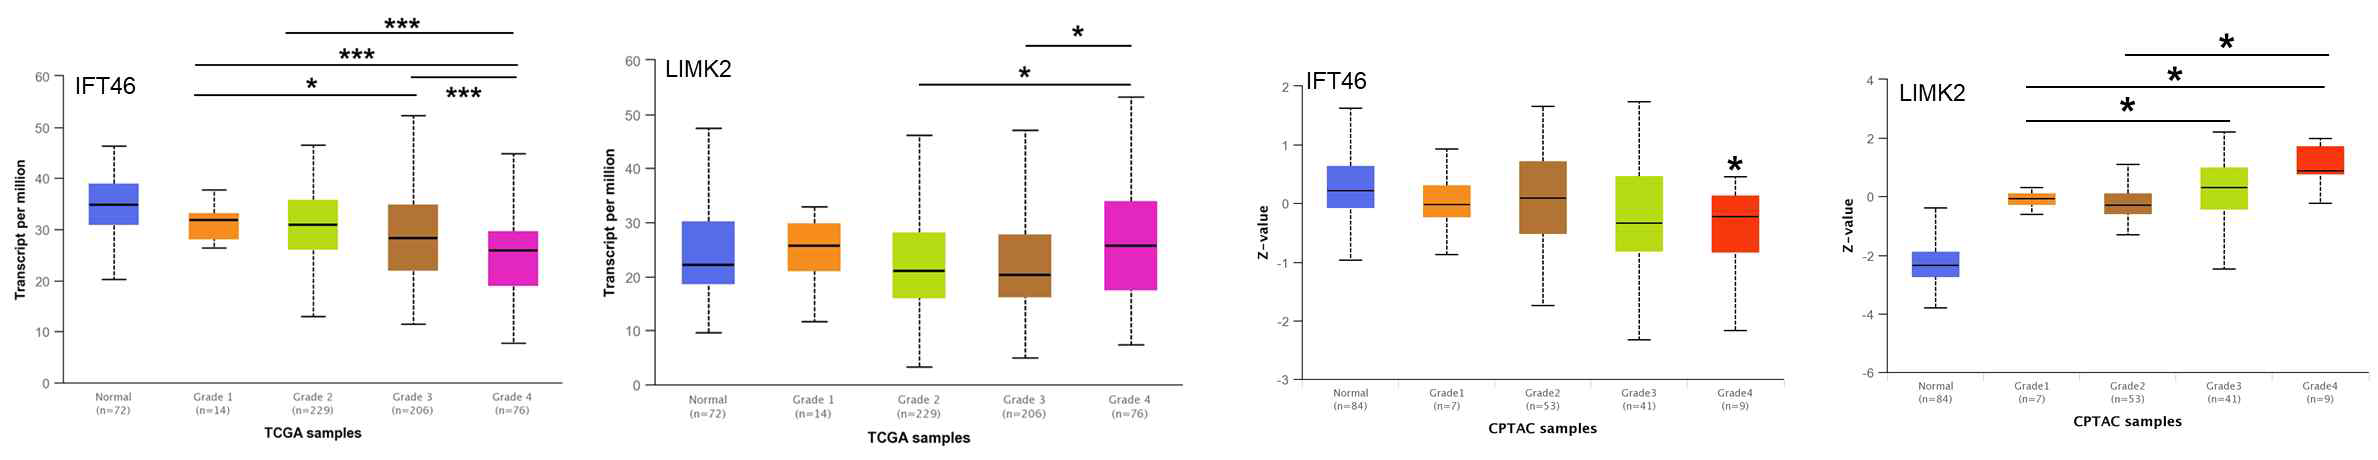 신장암 환자의 tumor grade에 따른 IFT46, LIMK2 발현 패턴 분석 결과